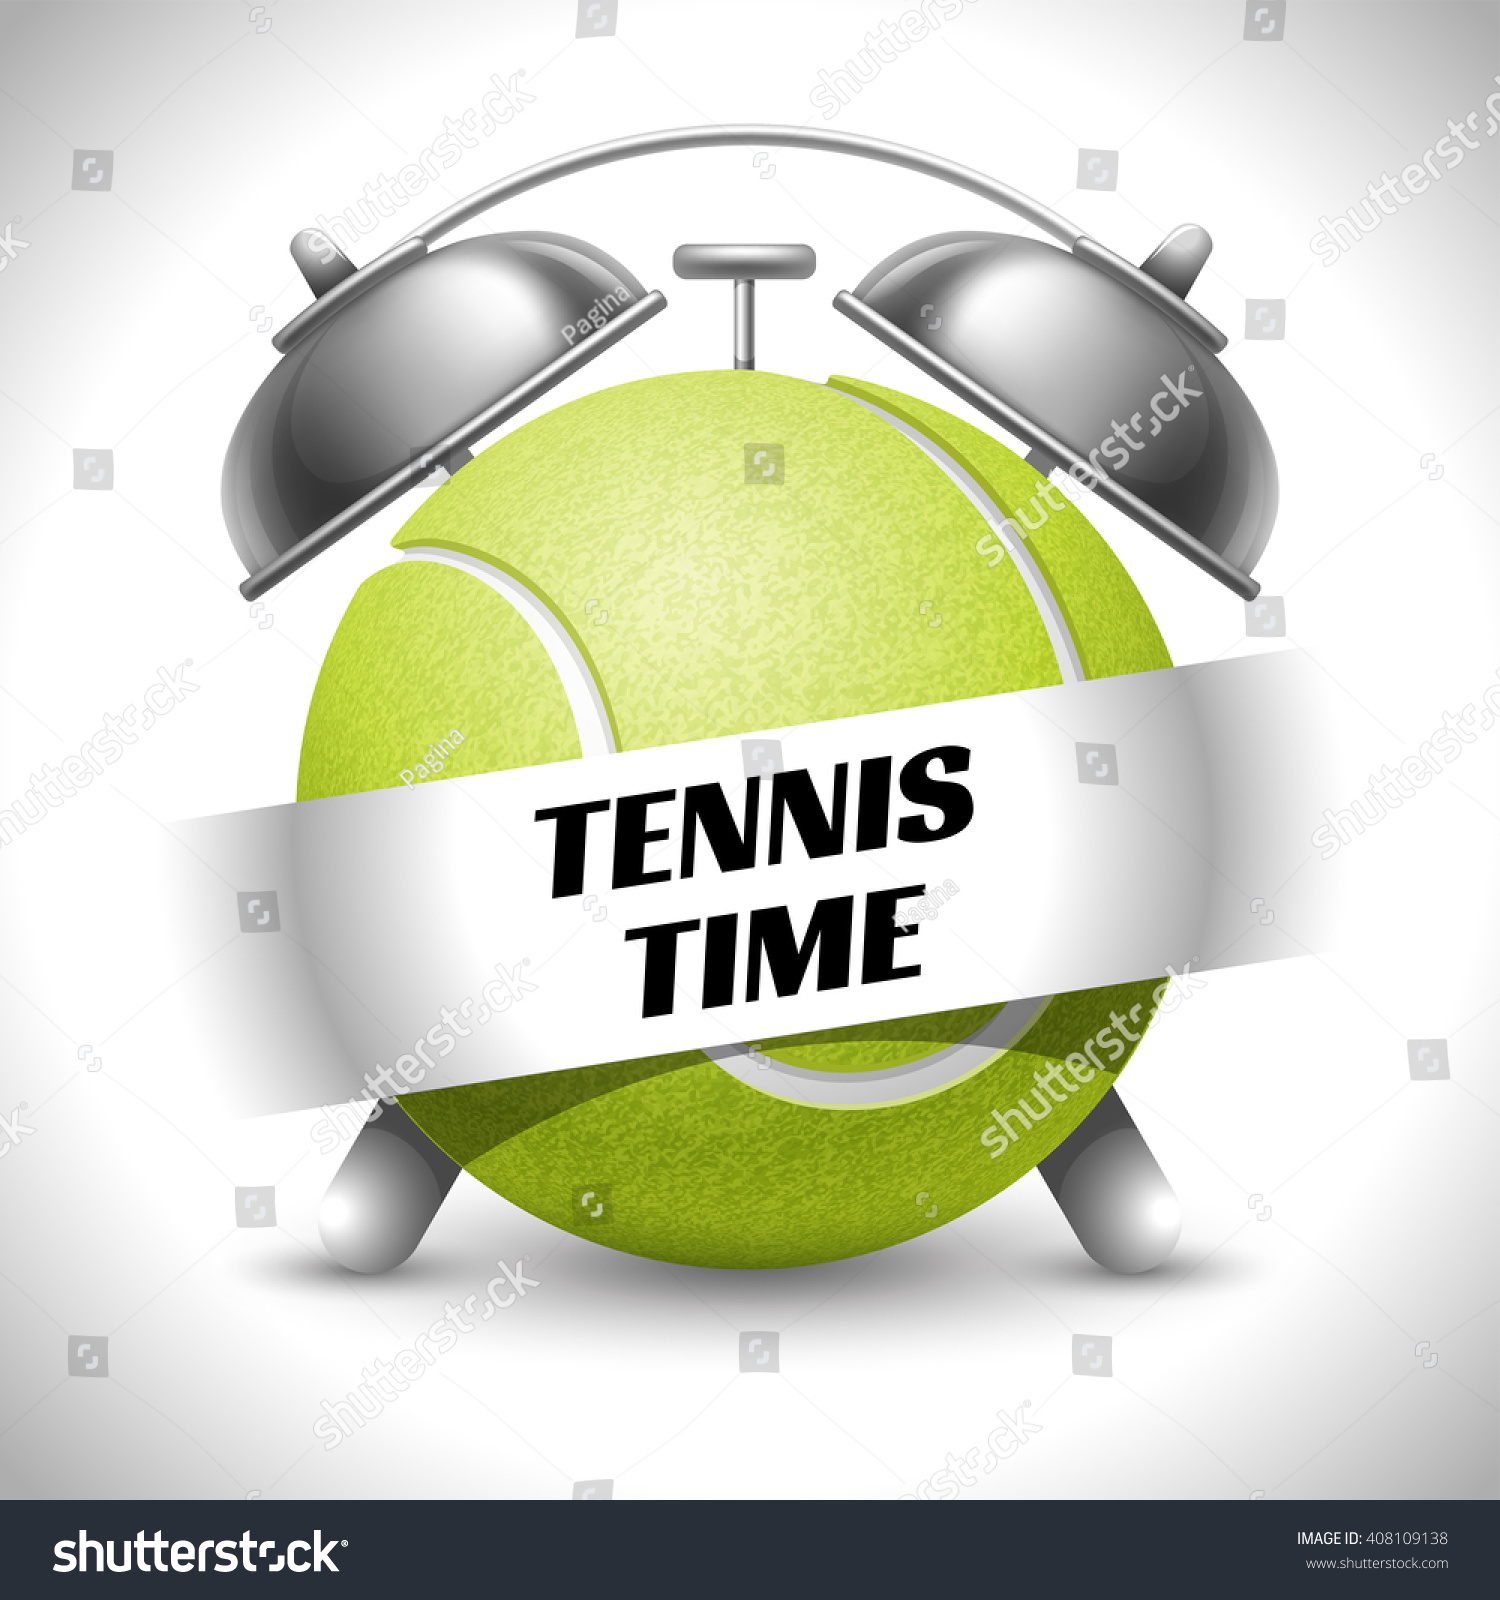 Tennis Time Concept On Sport Tennis Vectores En Stock 408109138 ...